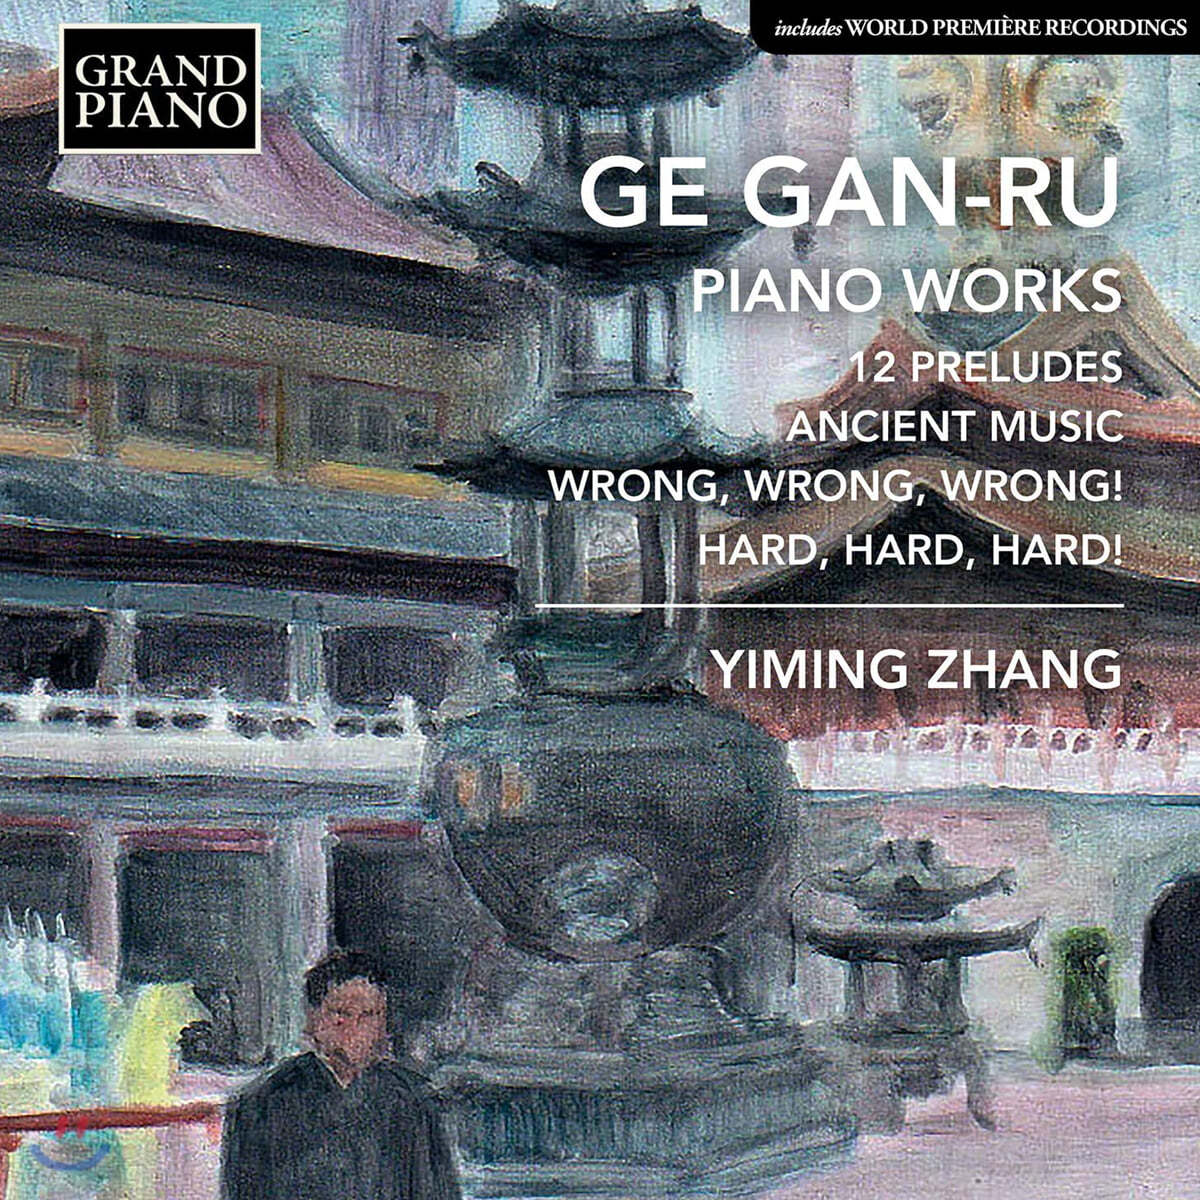 Yiming Zhang 거강루: 피아노 음악 (Ge Gan-Ru: Piano Works) 